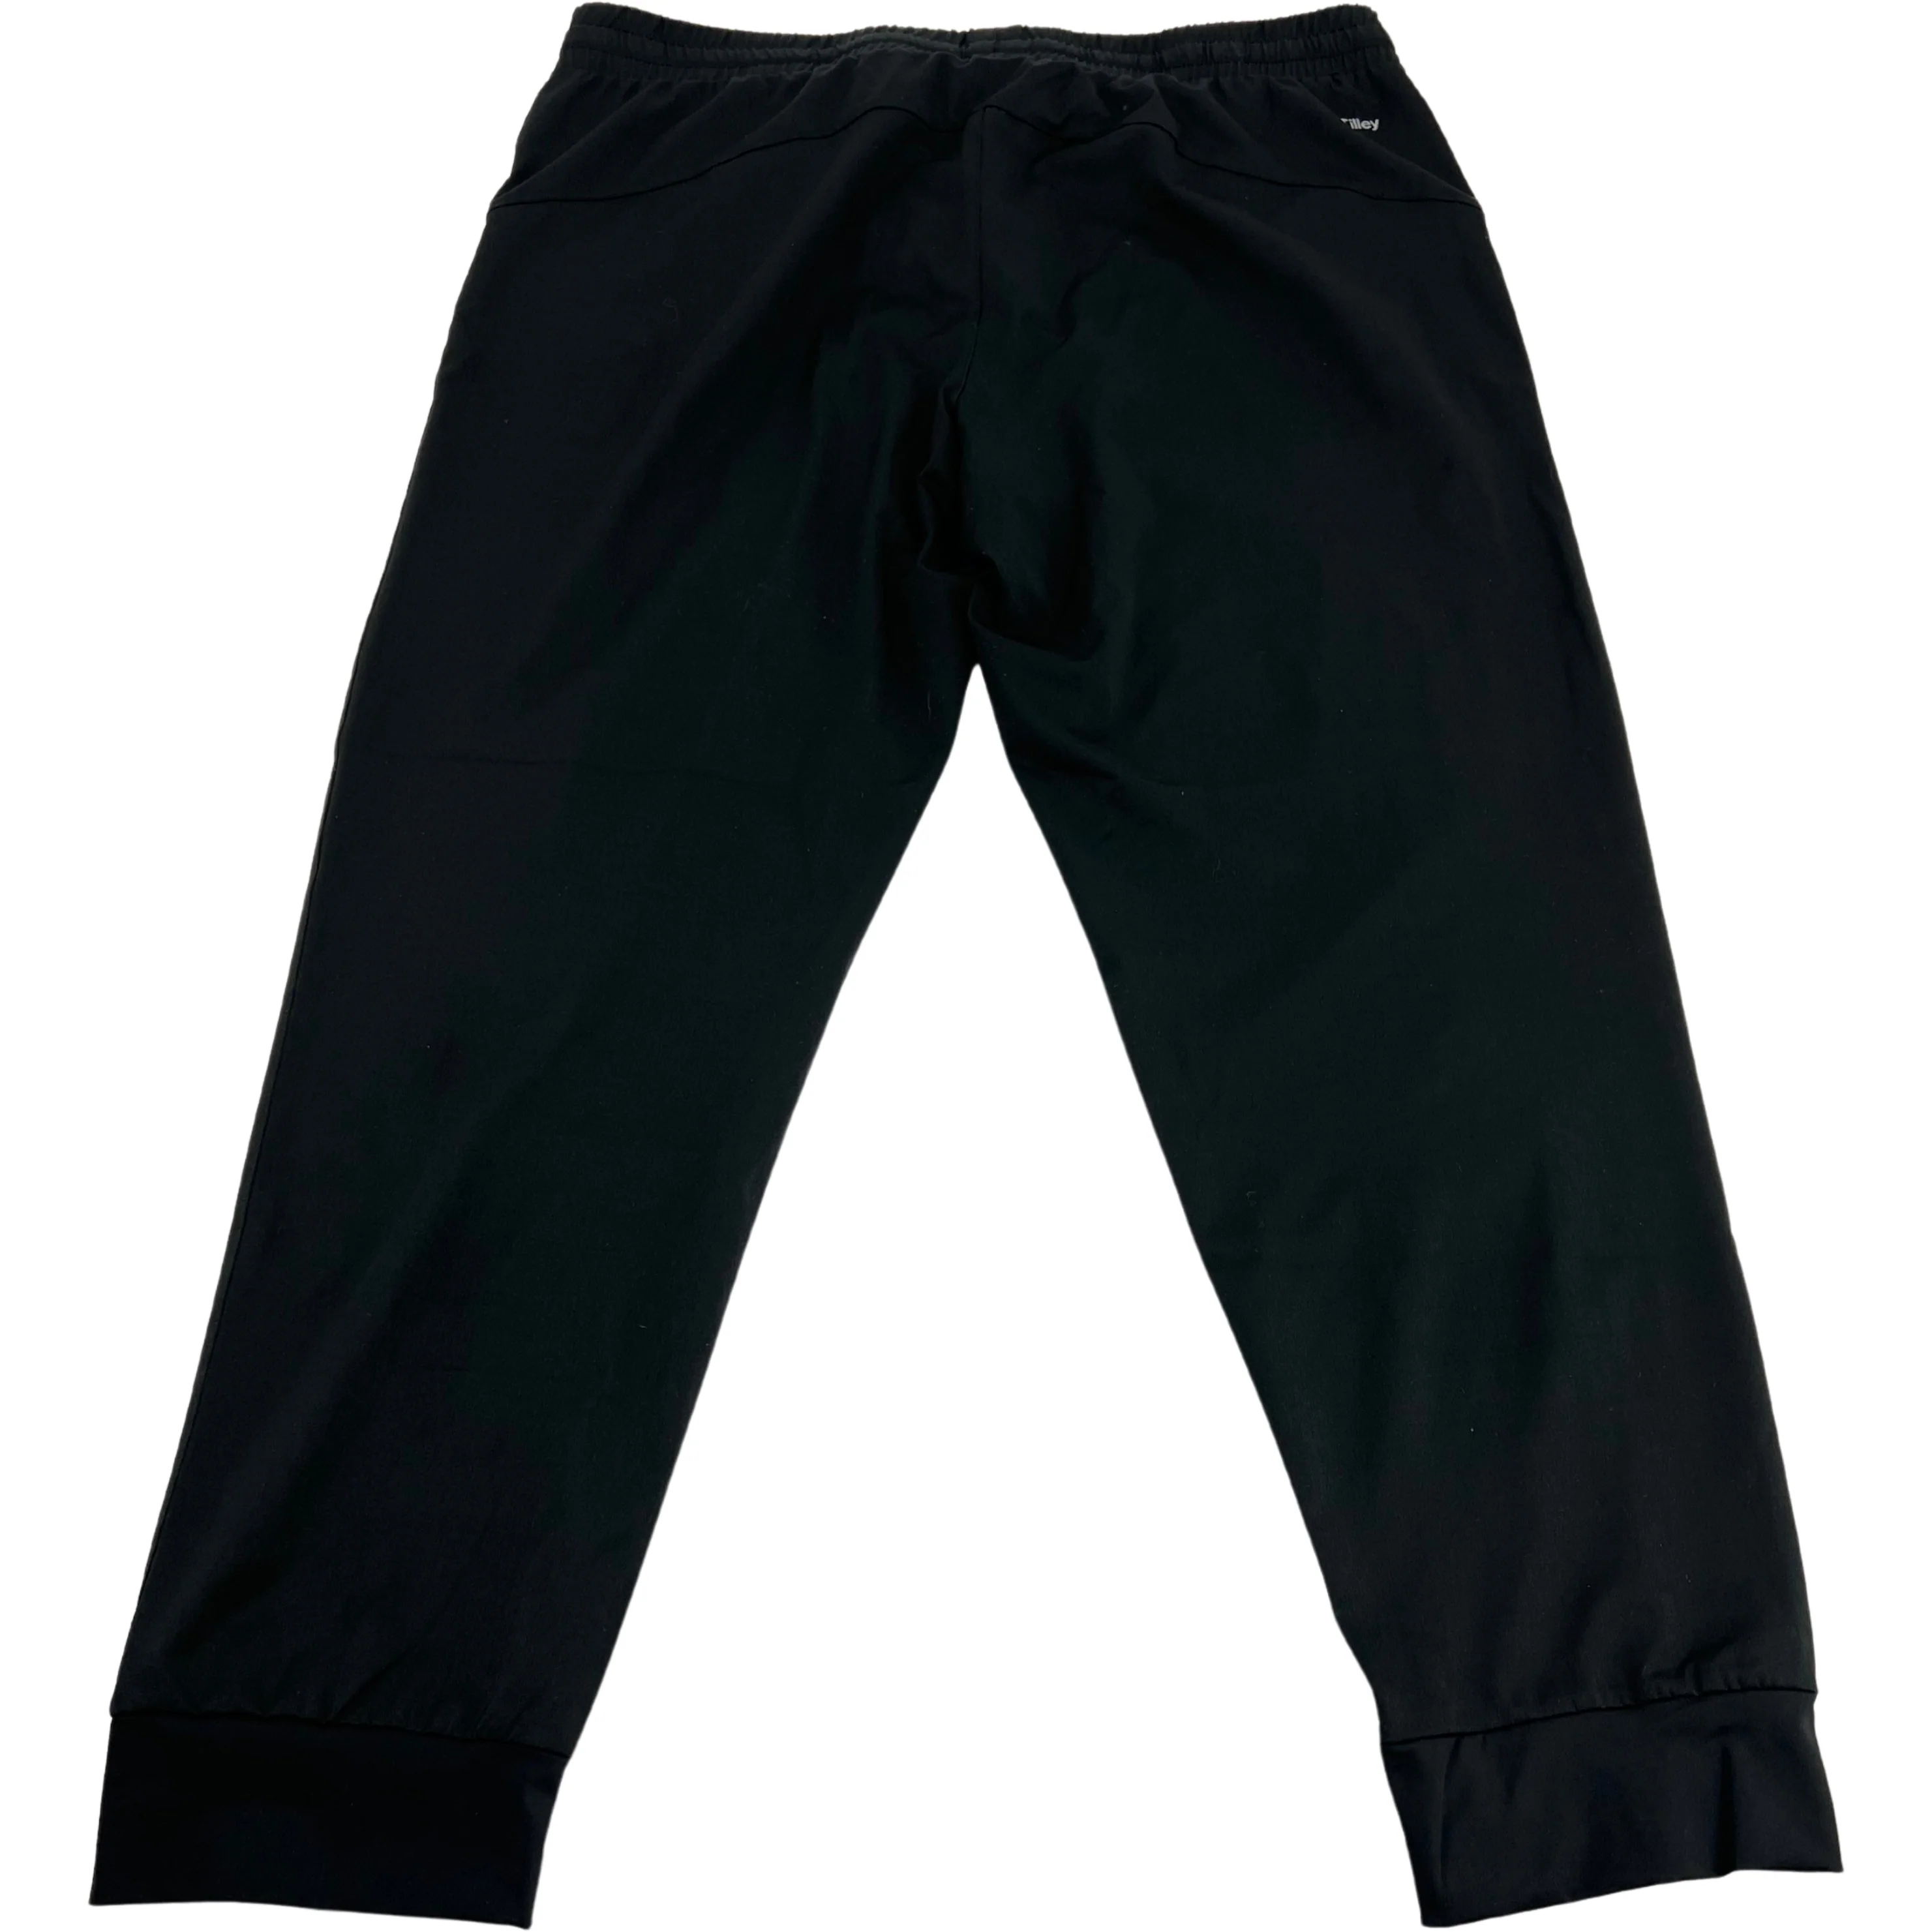 Tilley Women's Sweatpants / Jogger Pants / Black / Size XLarge